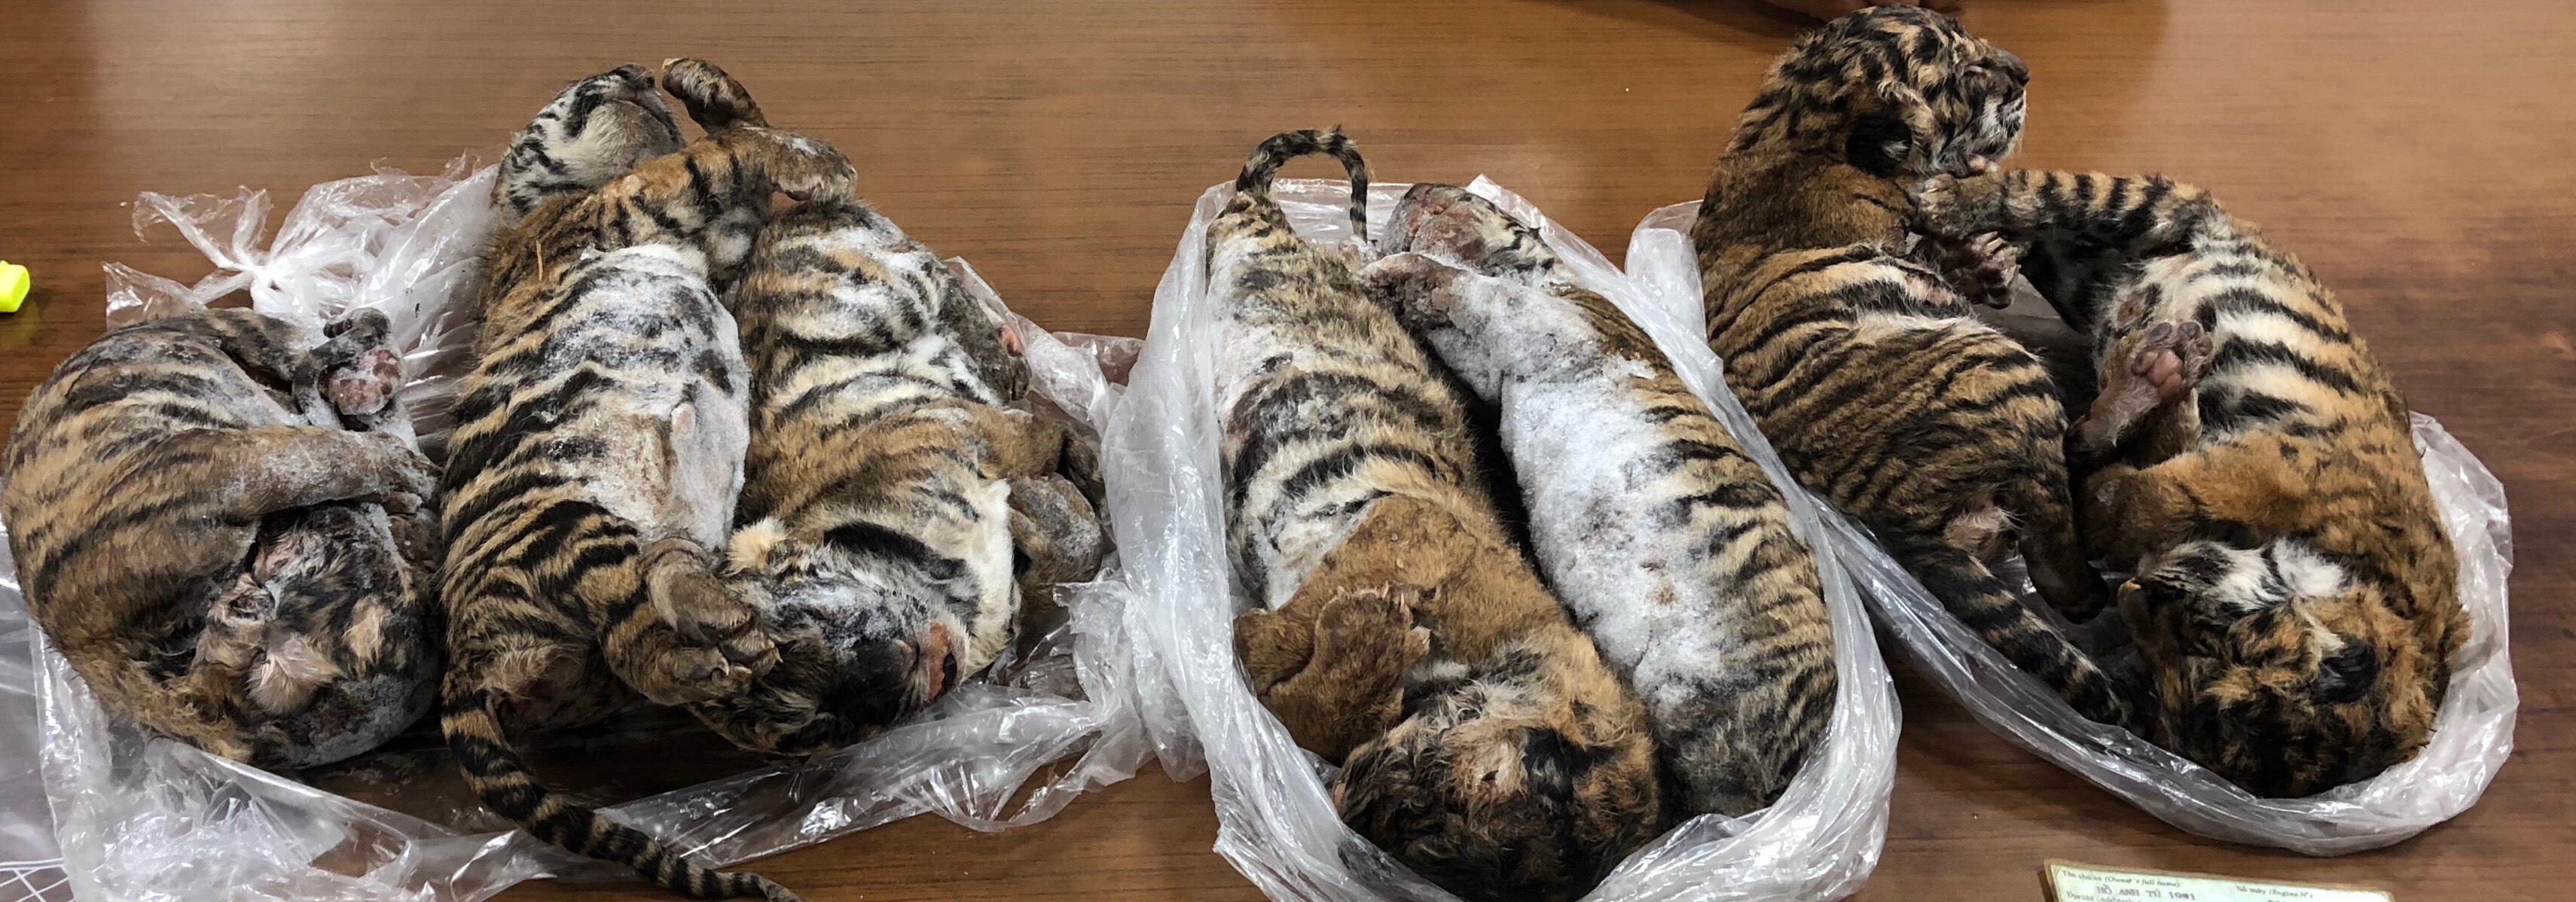 Los siete tigres eran llevados en el baúl del vehículo. (Foto Prensa Libre: AFP)